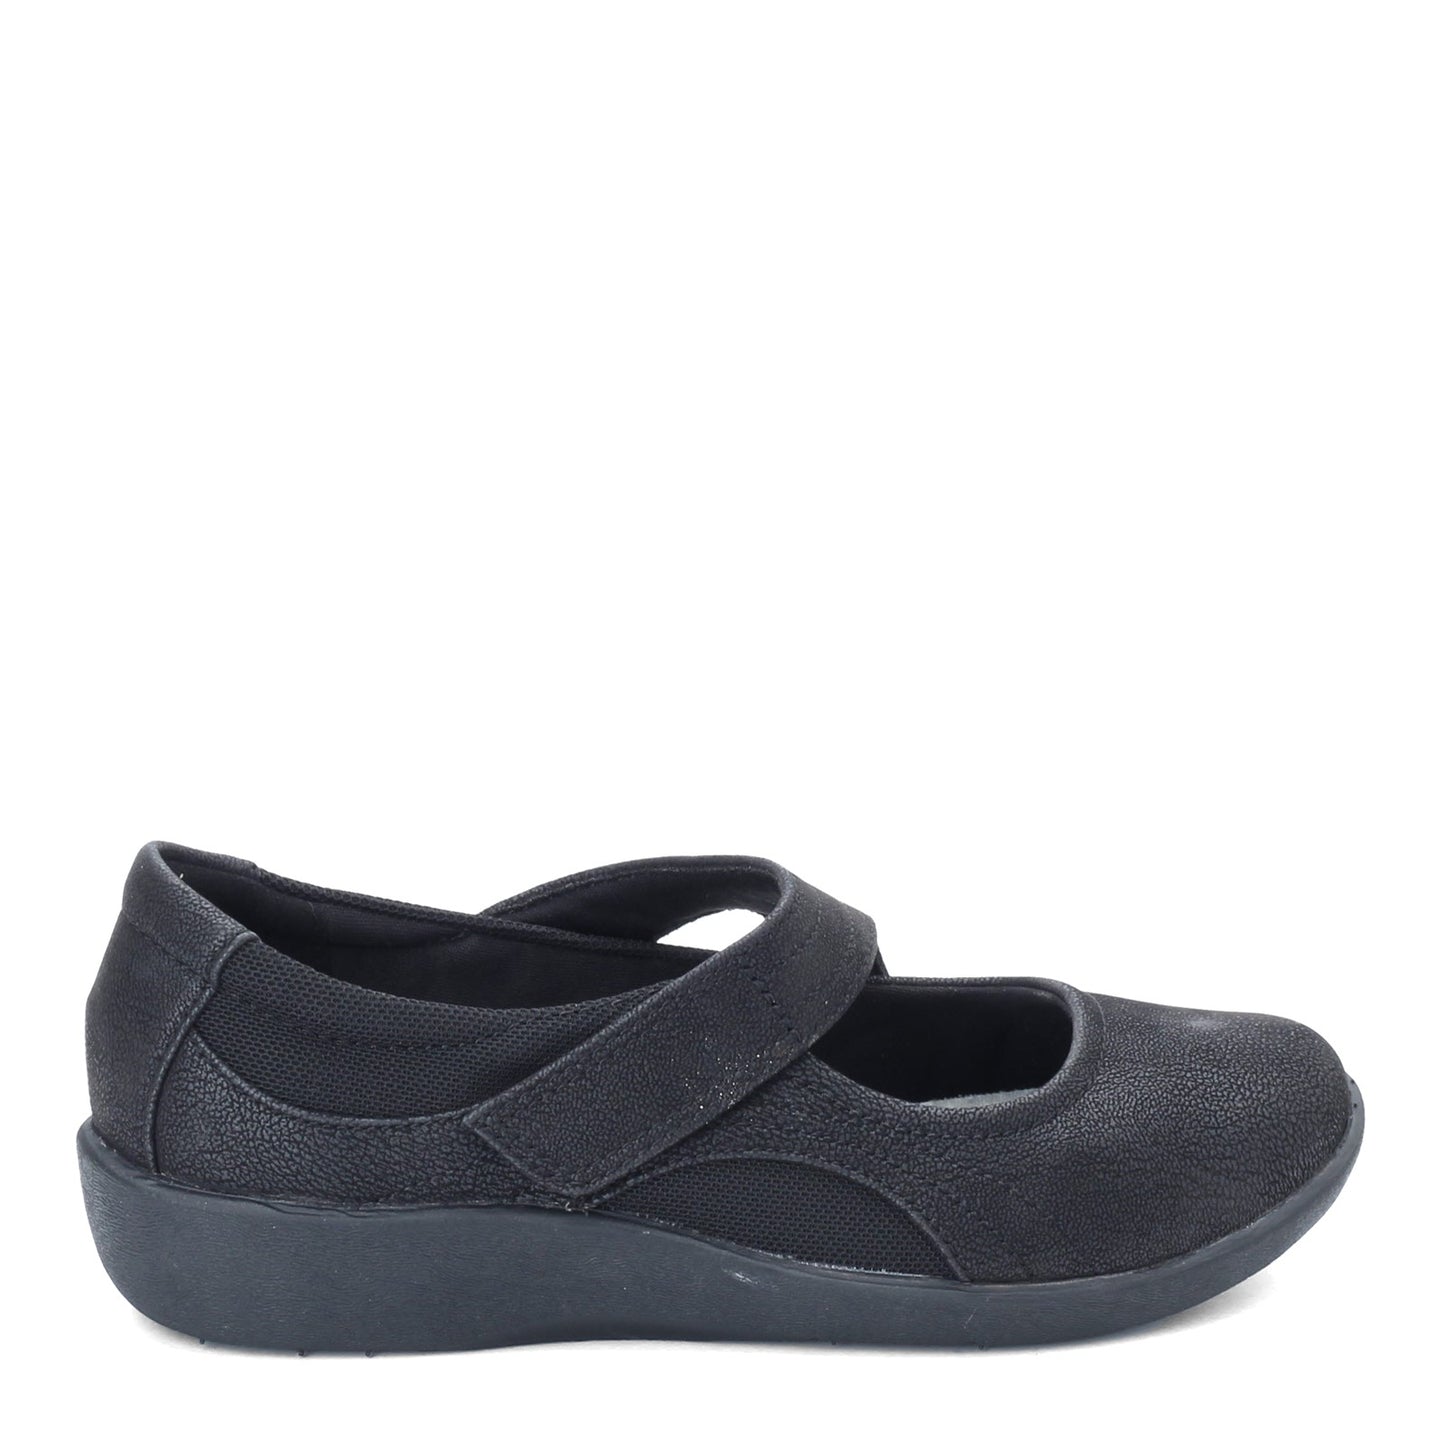 Peltz Shoes  Women's Clarks Sillian Bella Slip-On BLACK 26121457